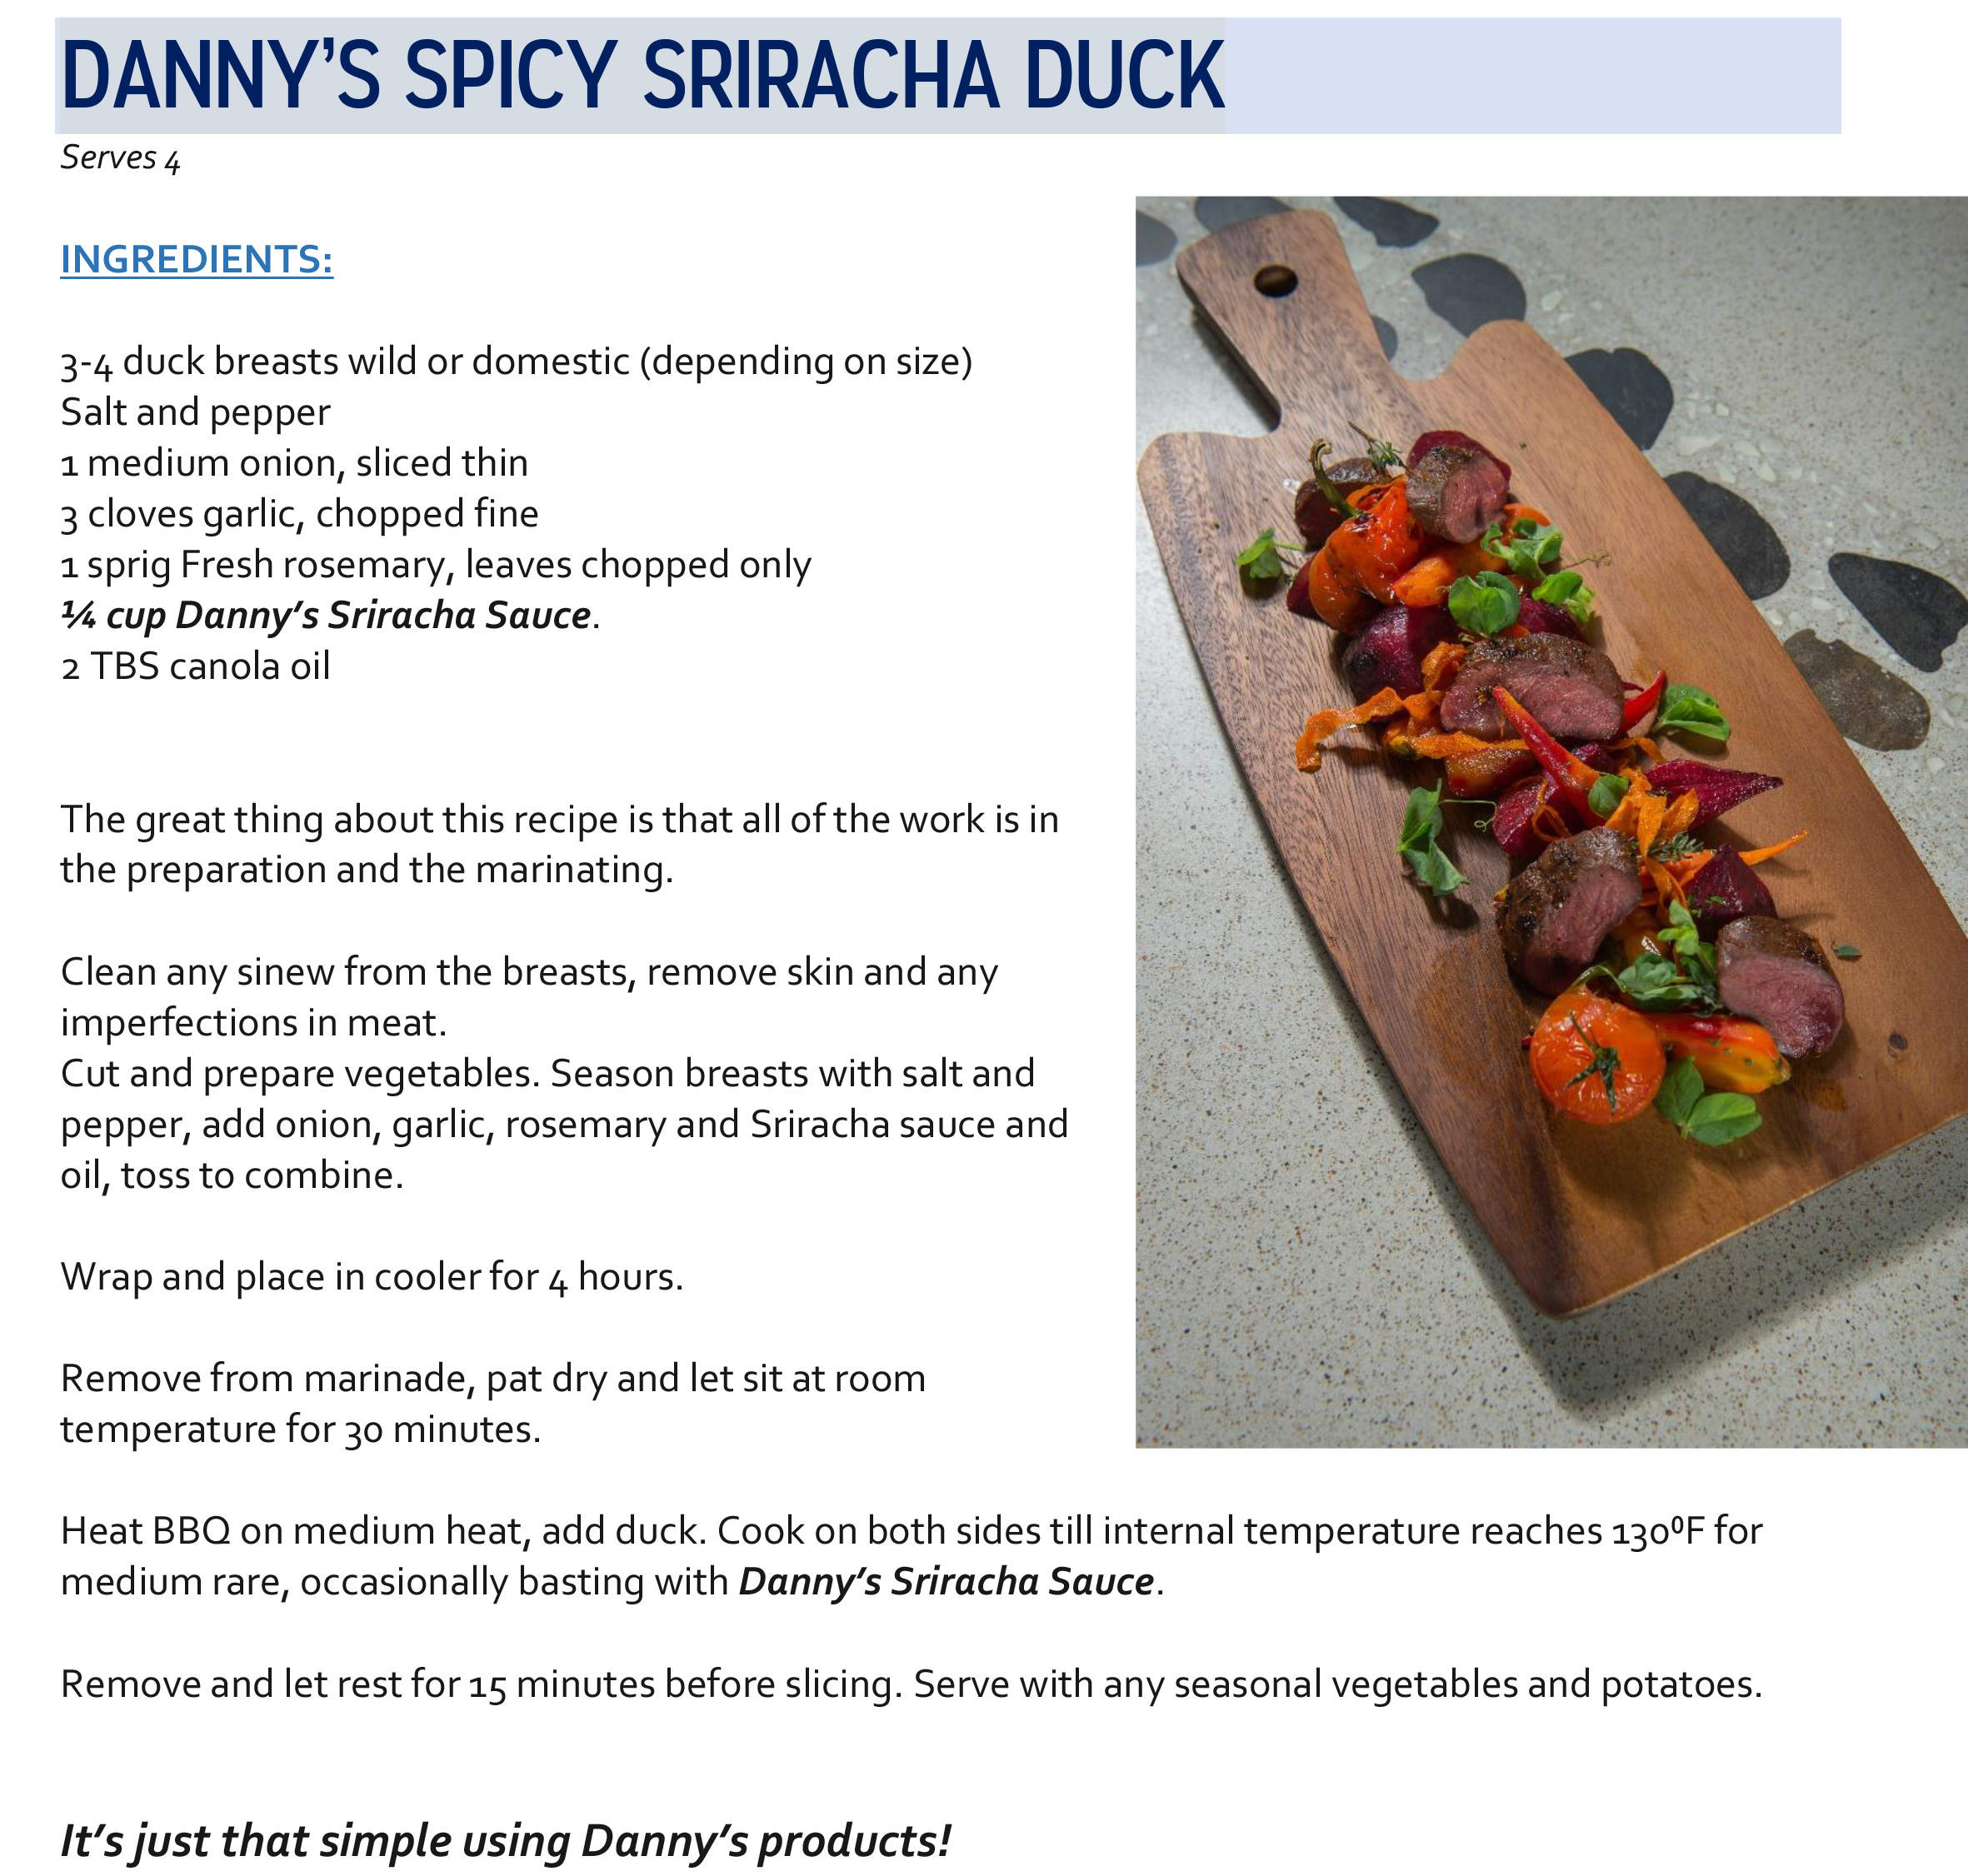 Danny's Spicy Sriracha Duck